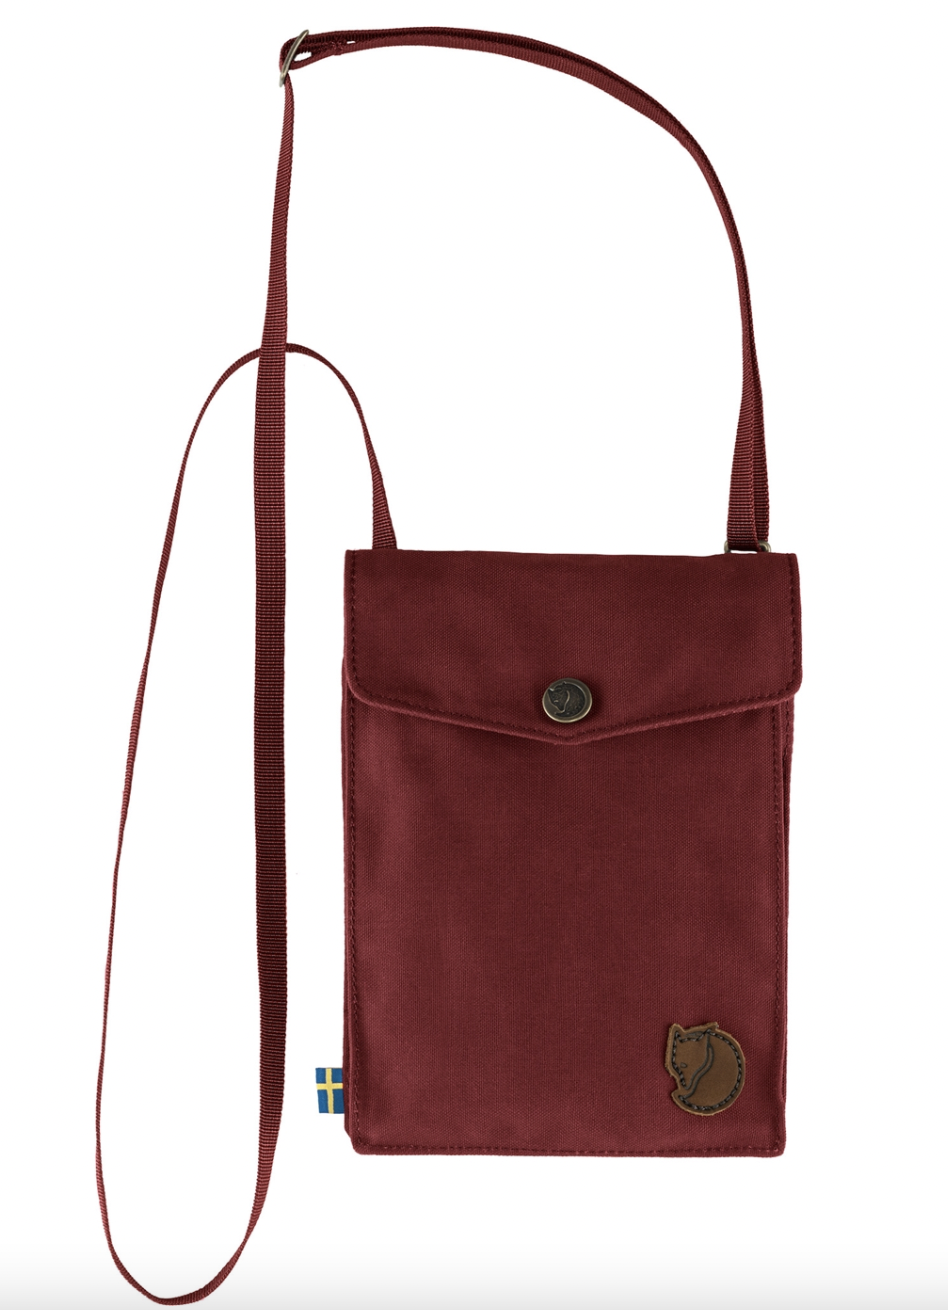 Fjallraven Kanken The Pocket Shoulder Bag 小斜揹袋 Bordeaux Red